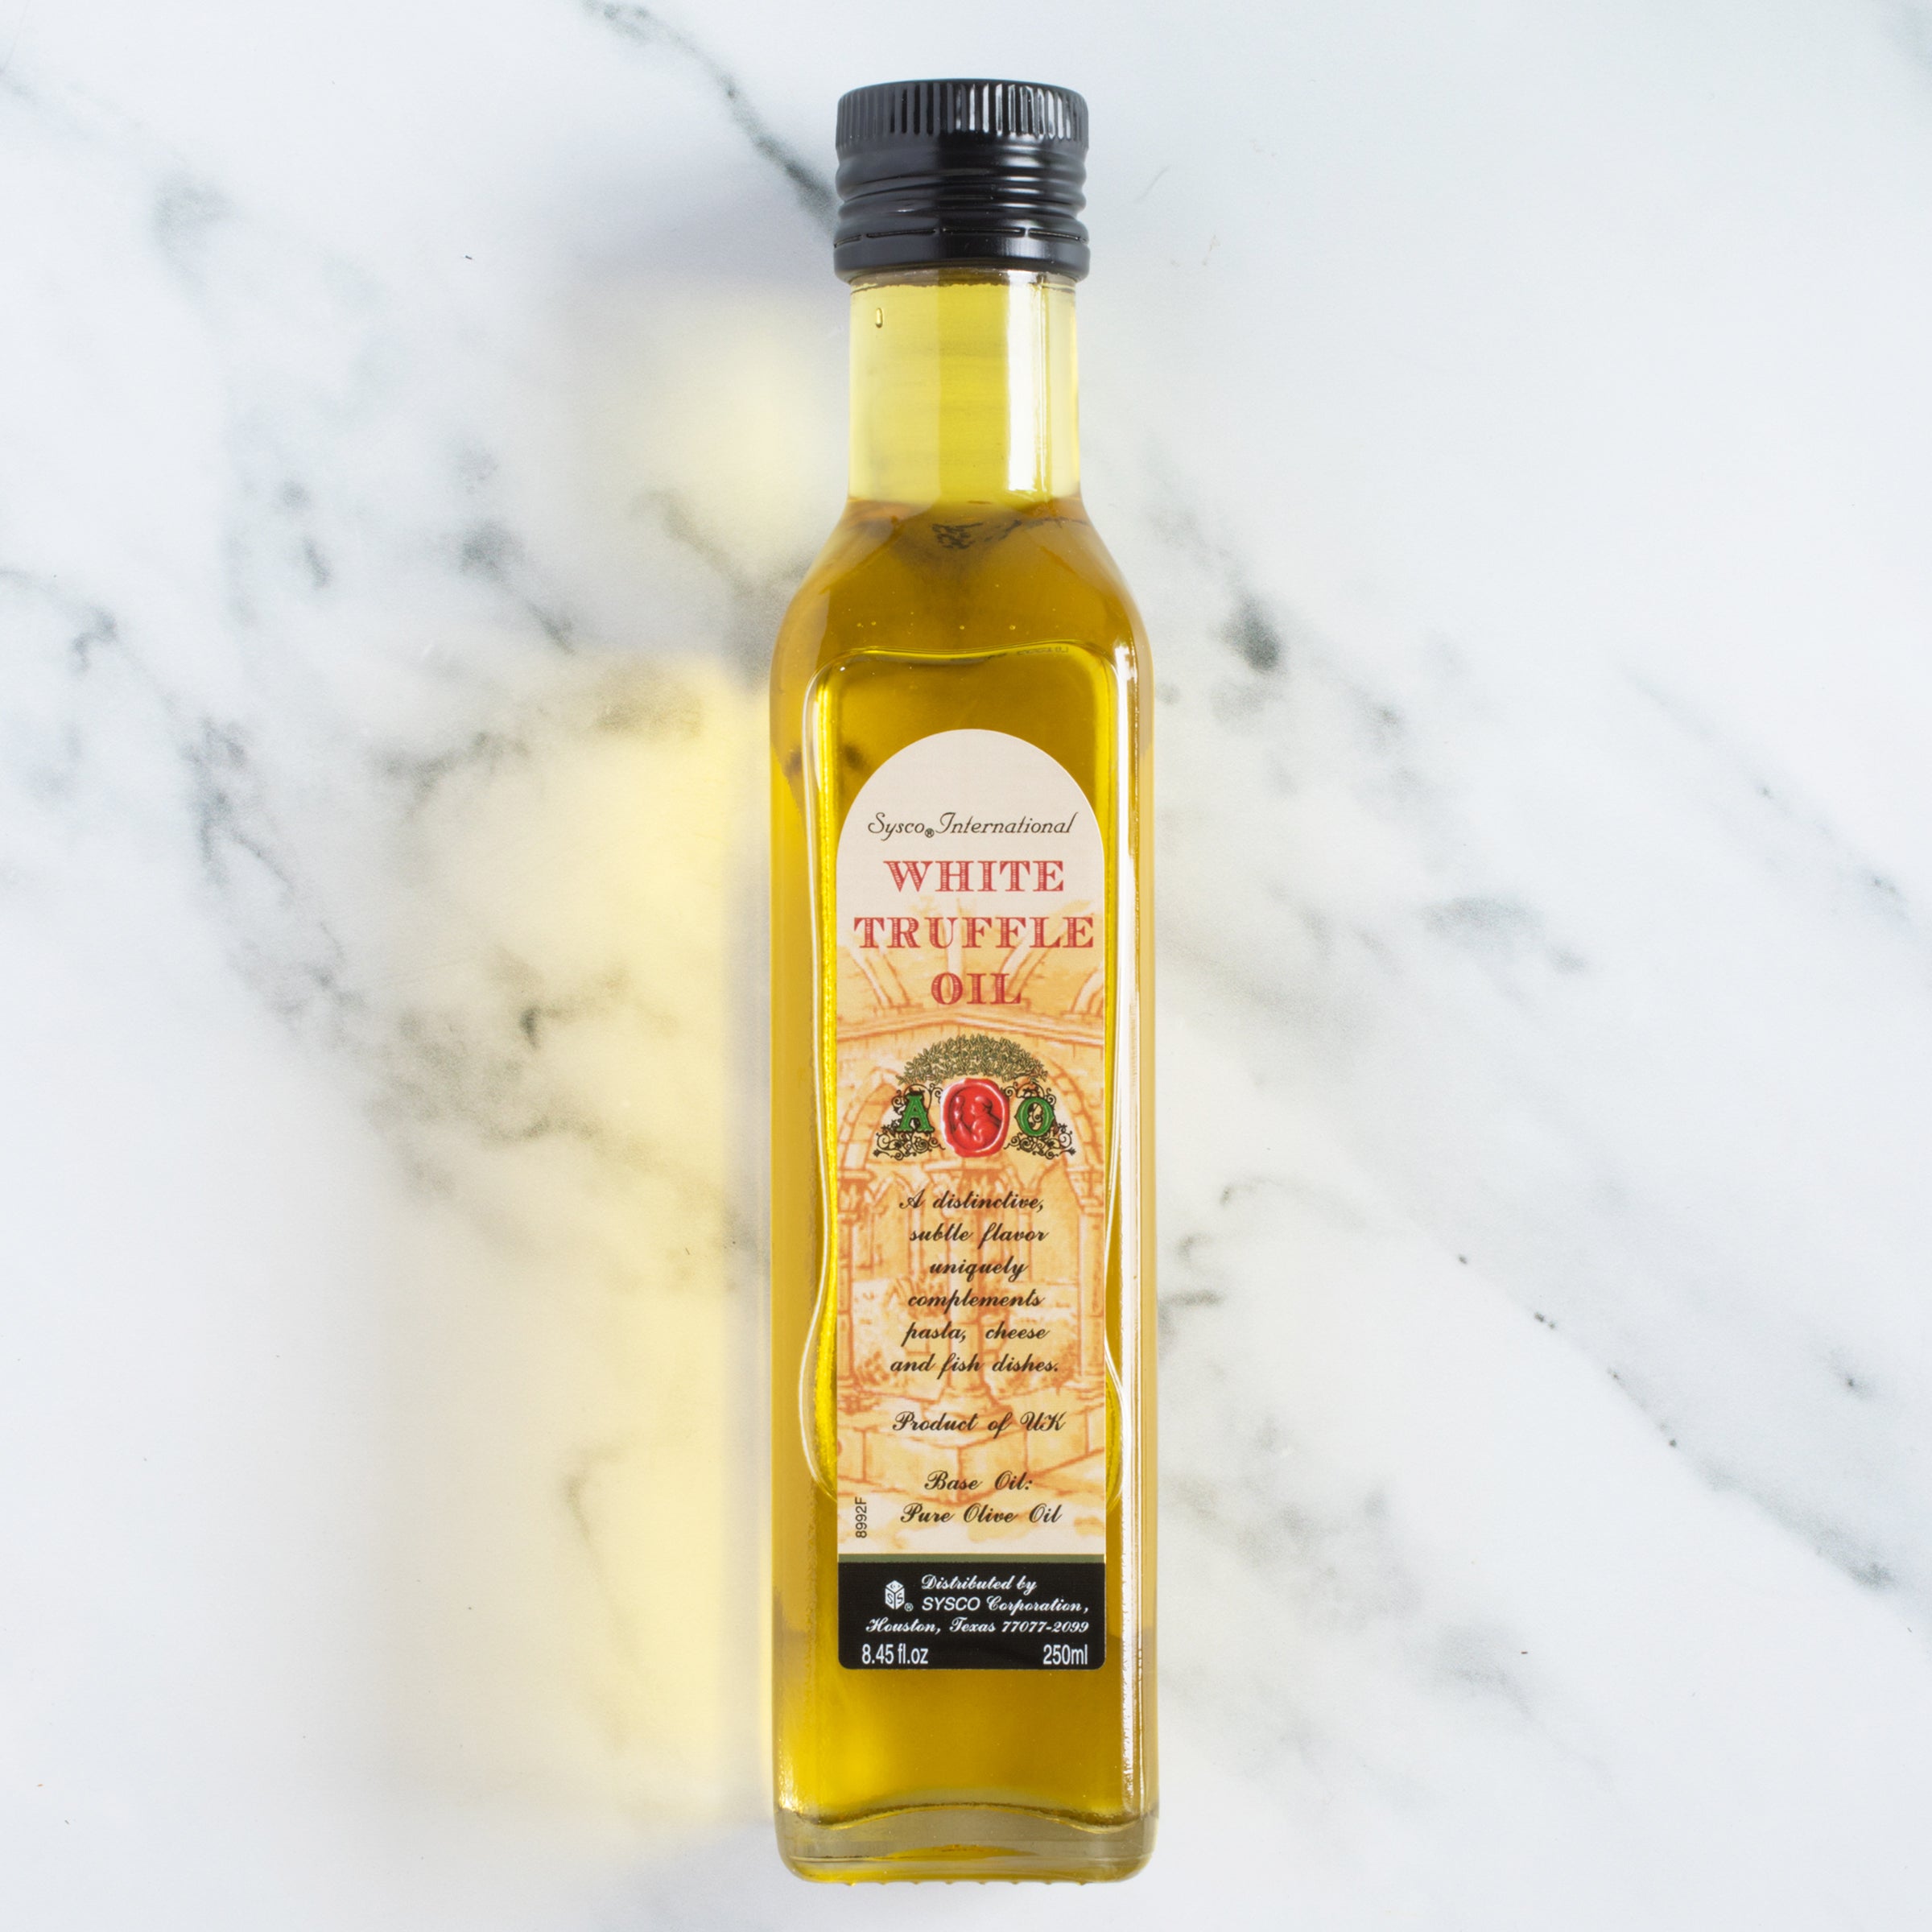 White Truffle Oil/Sysco/Specialty Oils